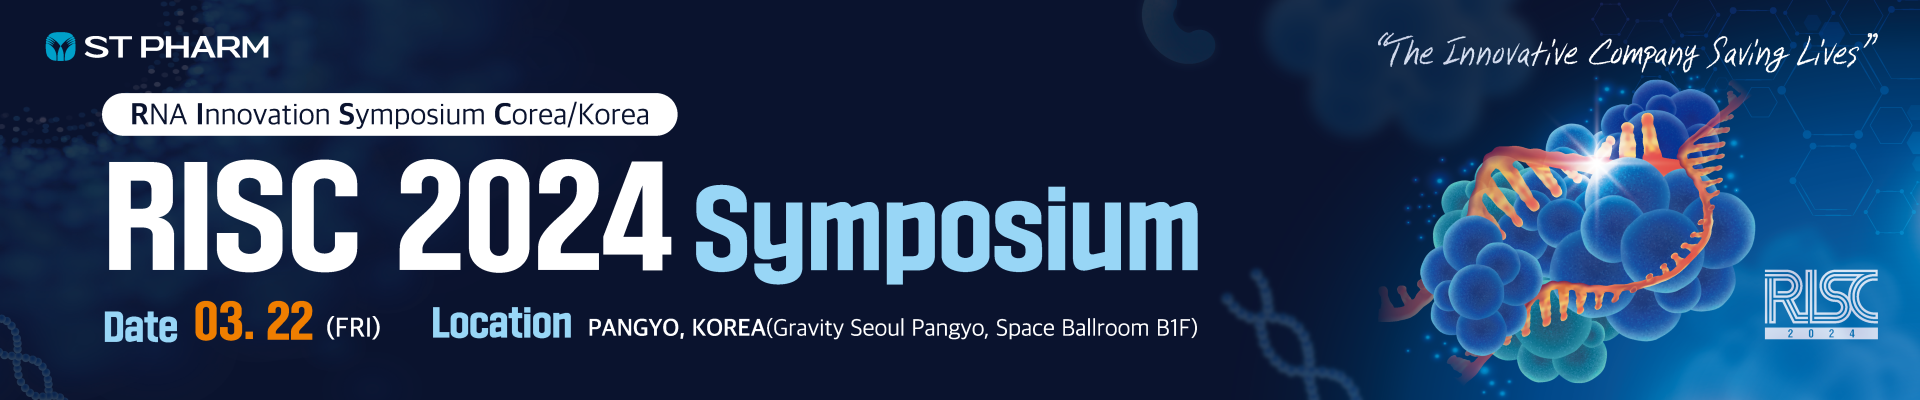 RNA Innovation Symposium Corea 2024 (RISC 2024)